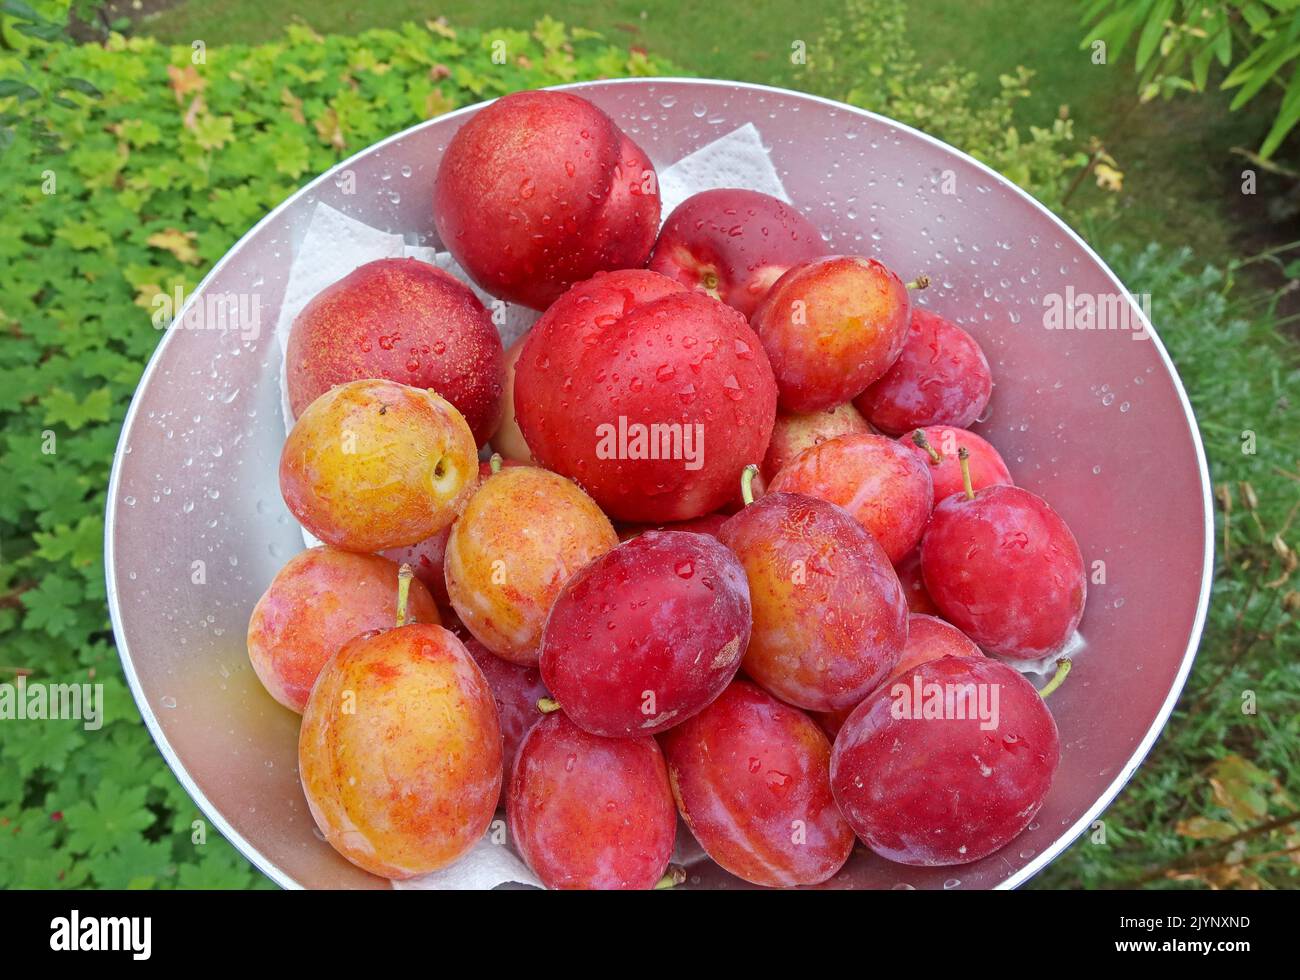 Ciotola di frutta di frutteto raccolta, da un frutteto - prugne e nettarine, Cheshire, Inghilterra, Regno Unito Foto Stock